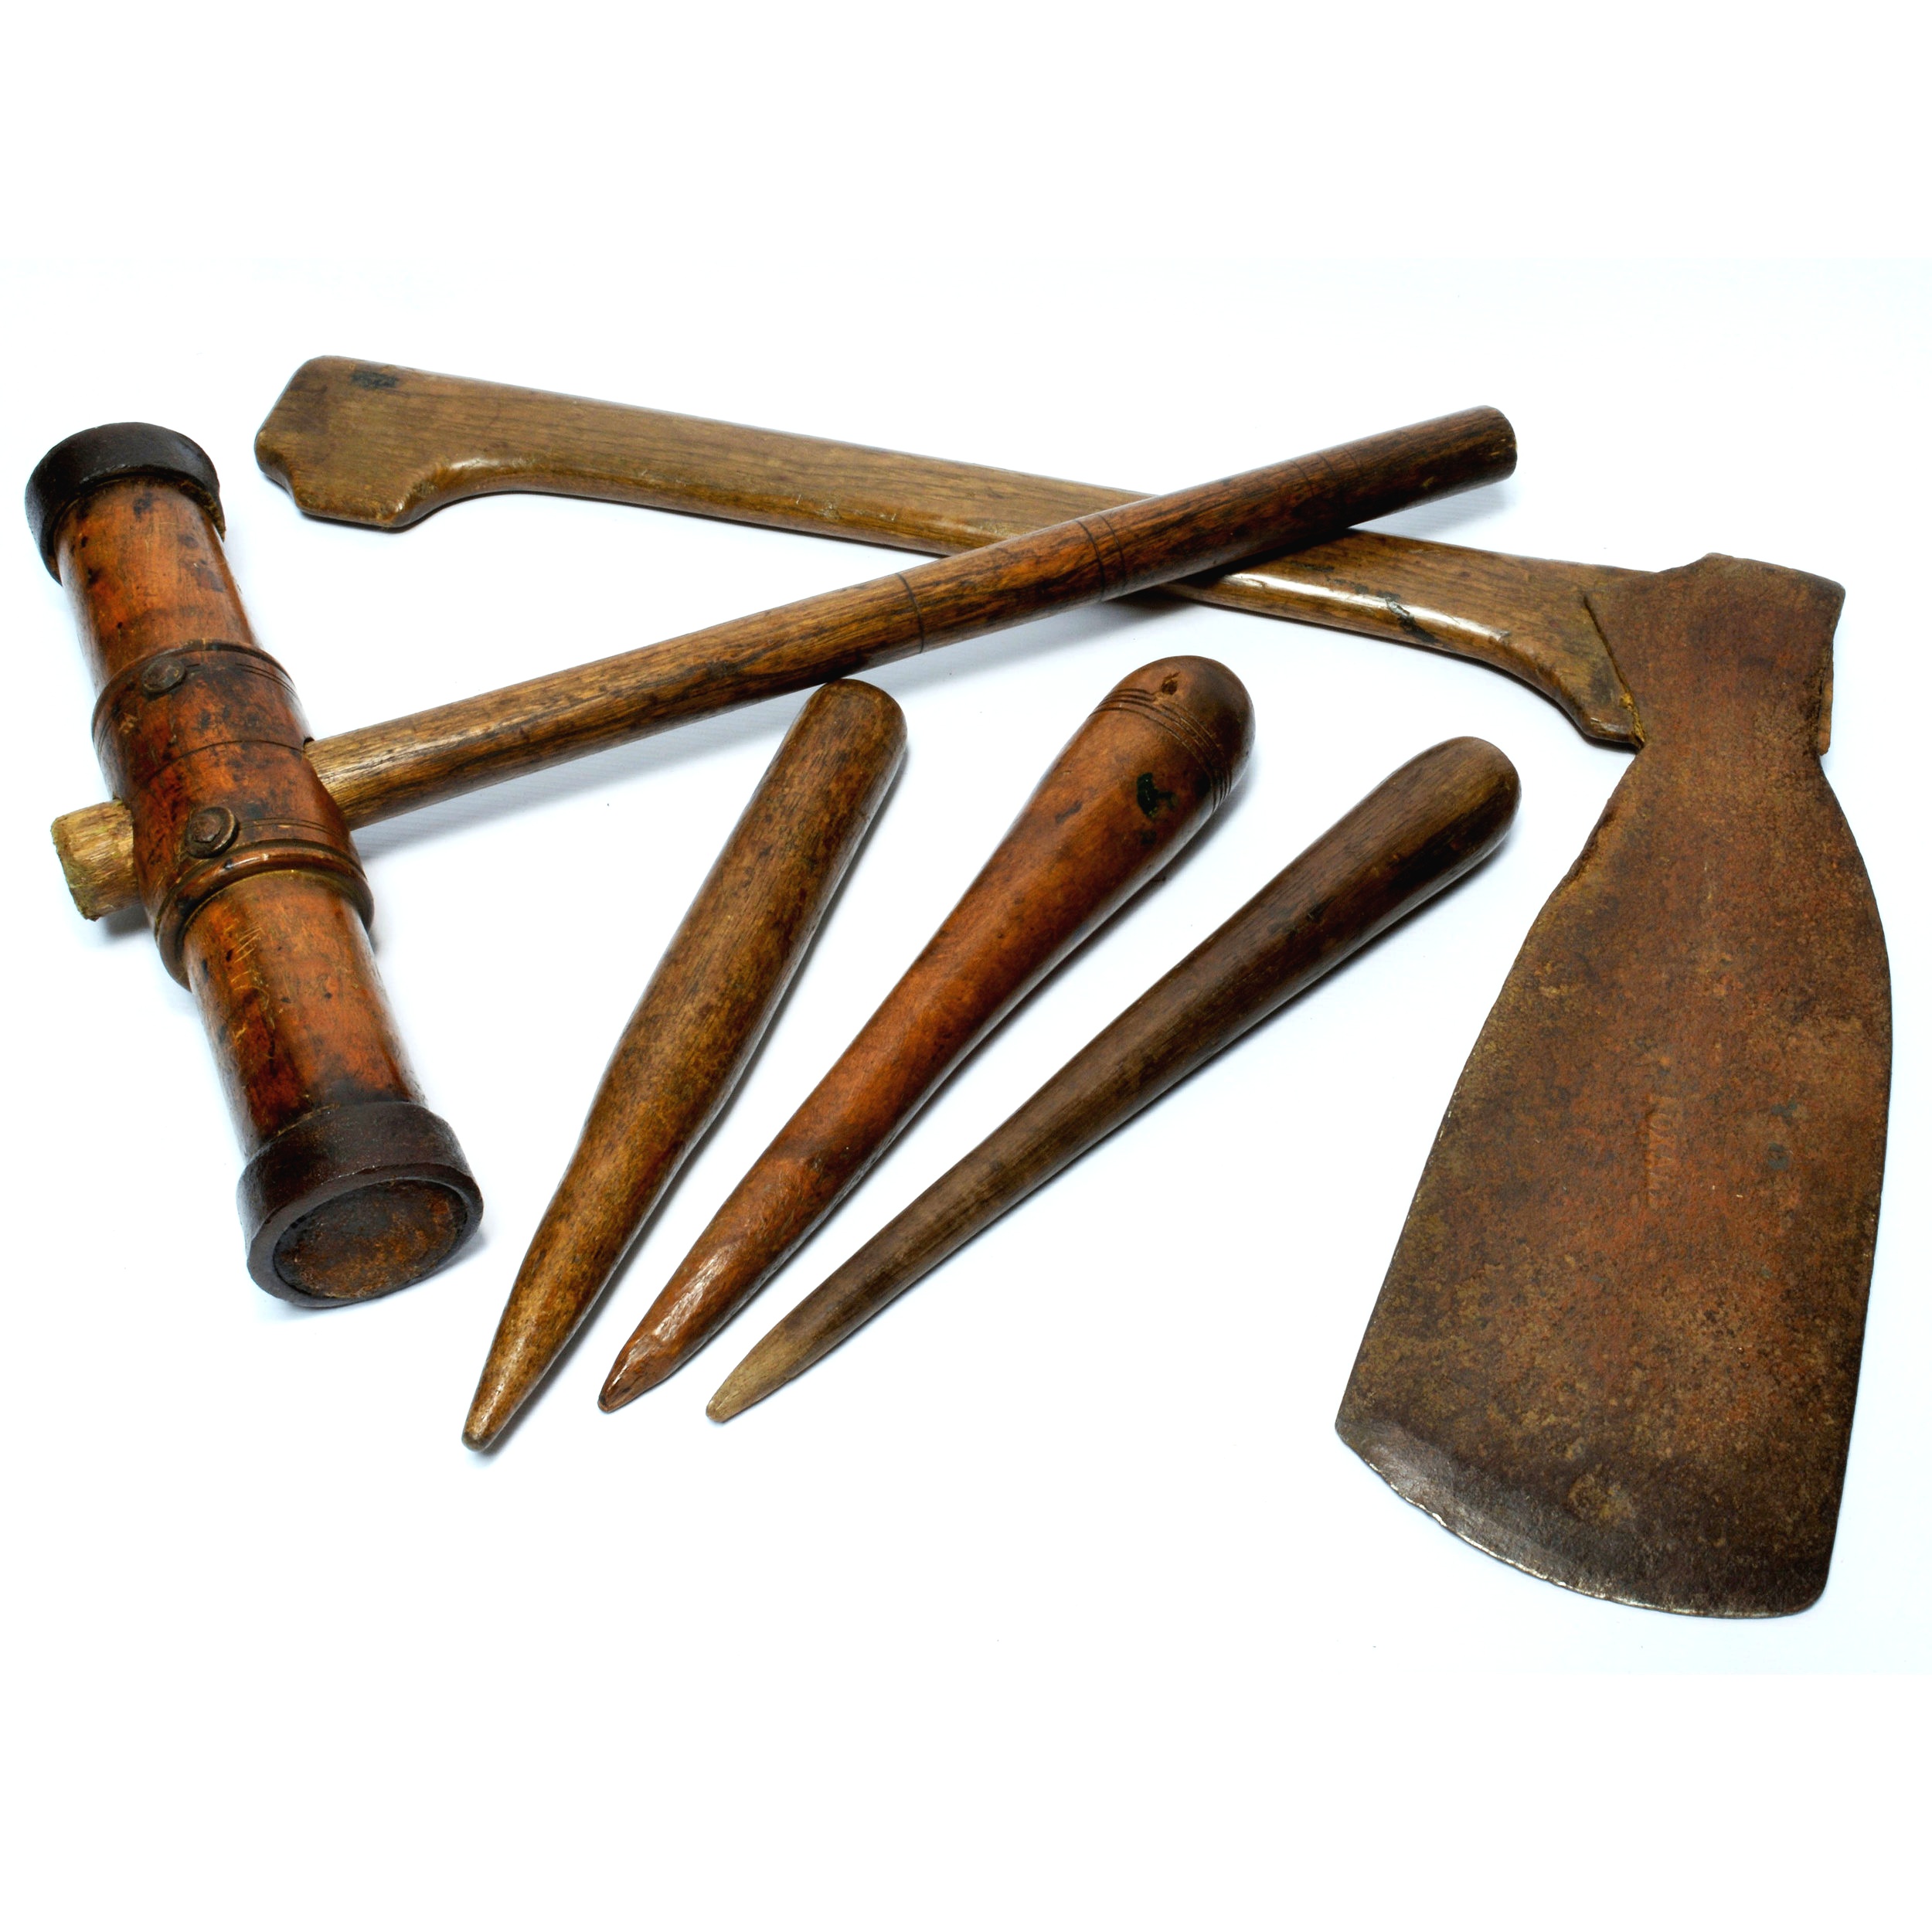 Shipwright's tools